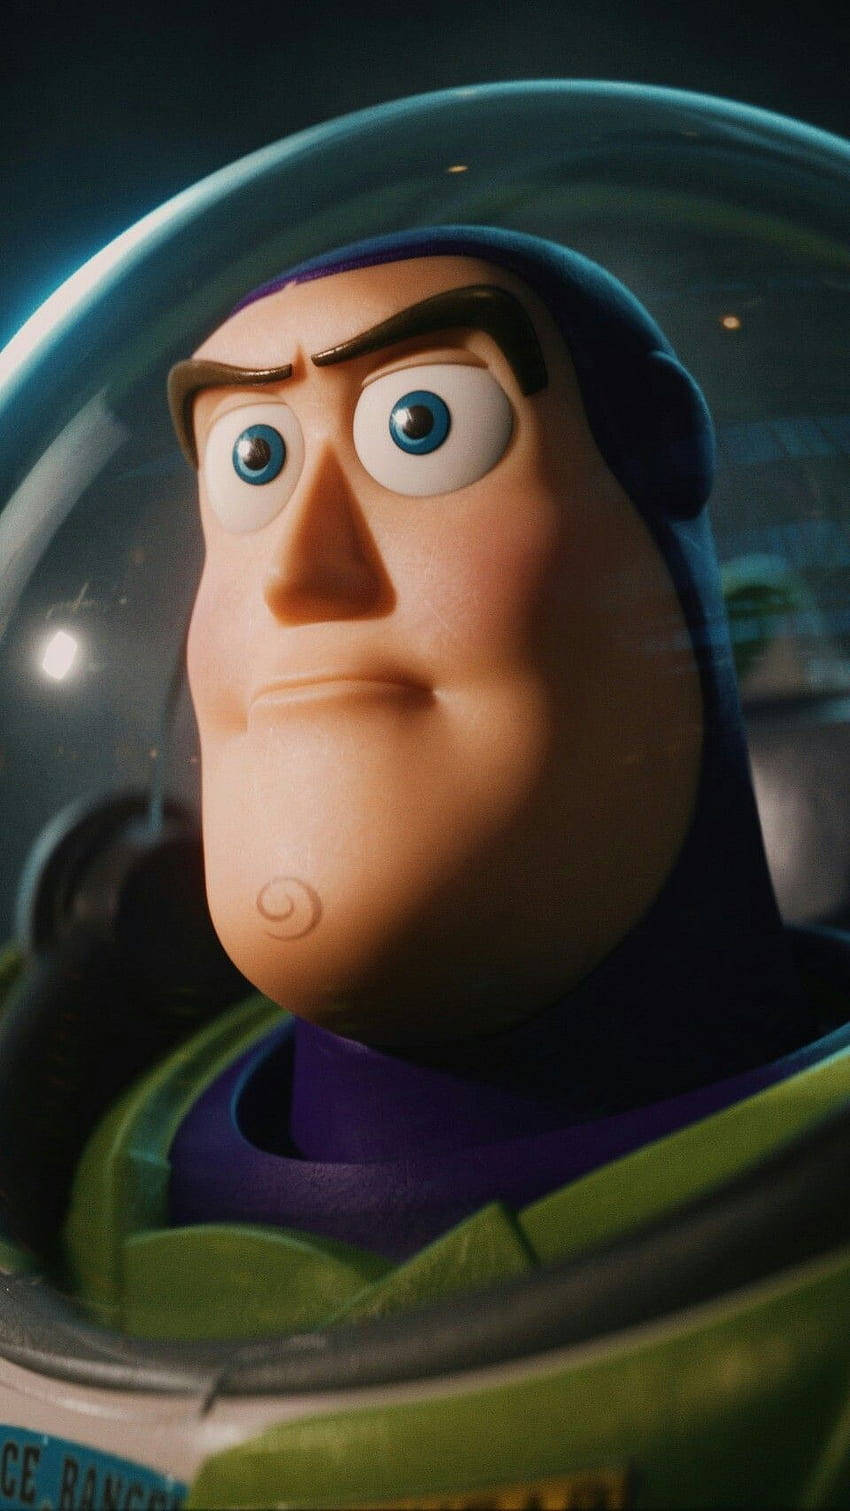 Buzz Lightyear Close-Up Shot Wallpaper